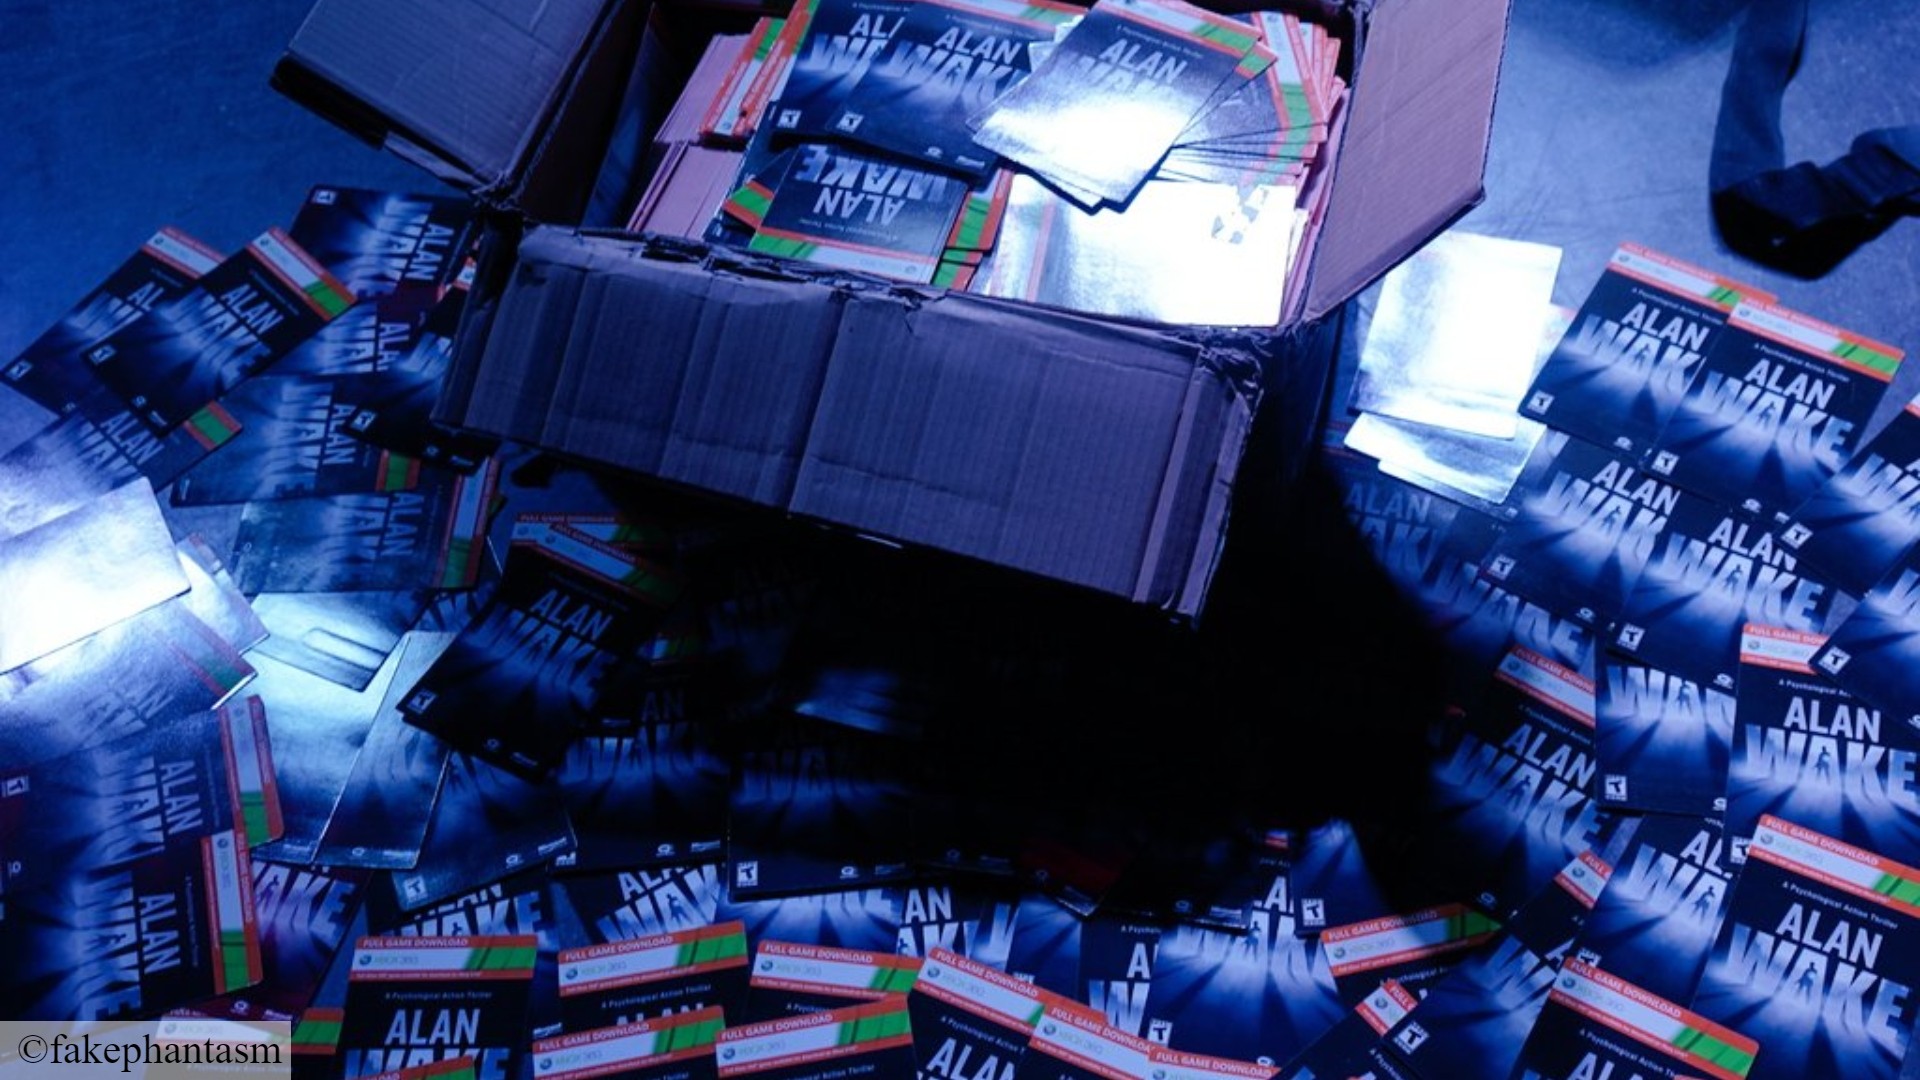 Jeu d'horreur Alan Wake Steam : Une énorme boîte de cartes à télécharger Alan Wake